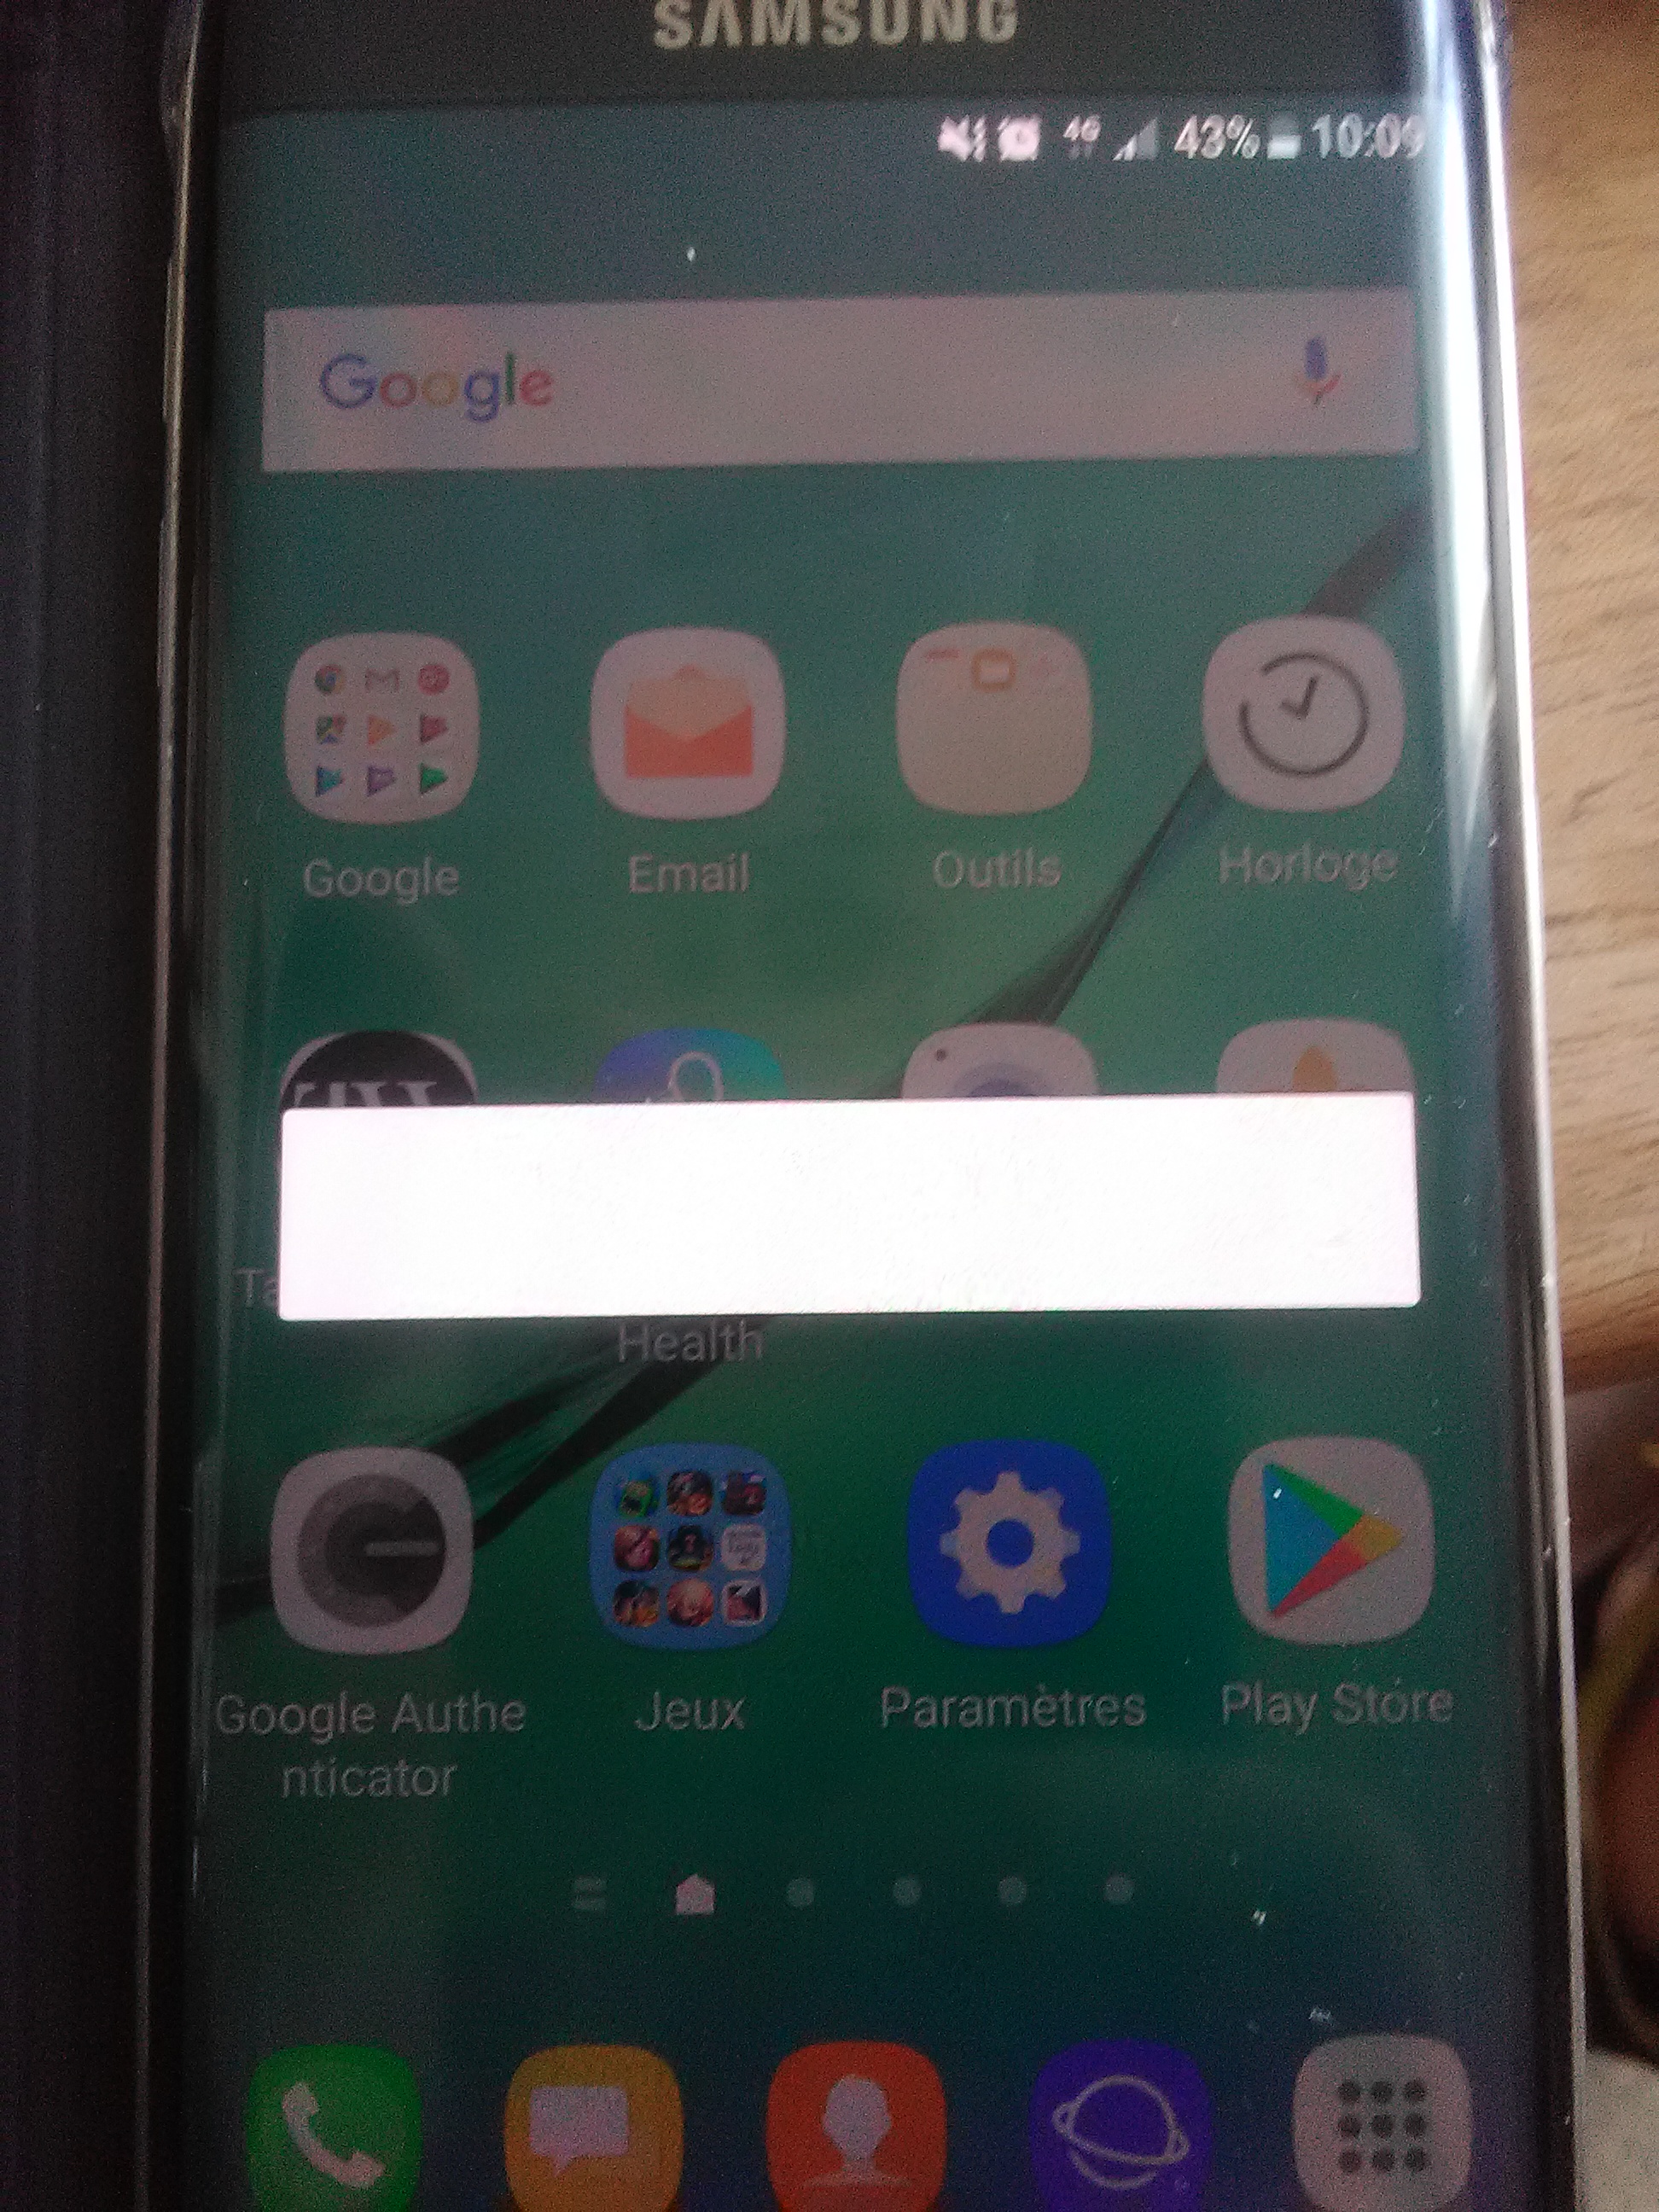 Barre blanche sur écran Samsung S6 - Android en général ...